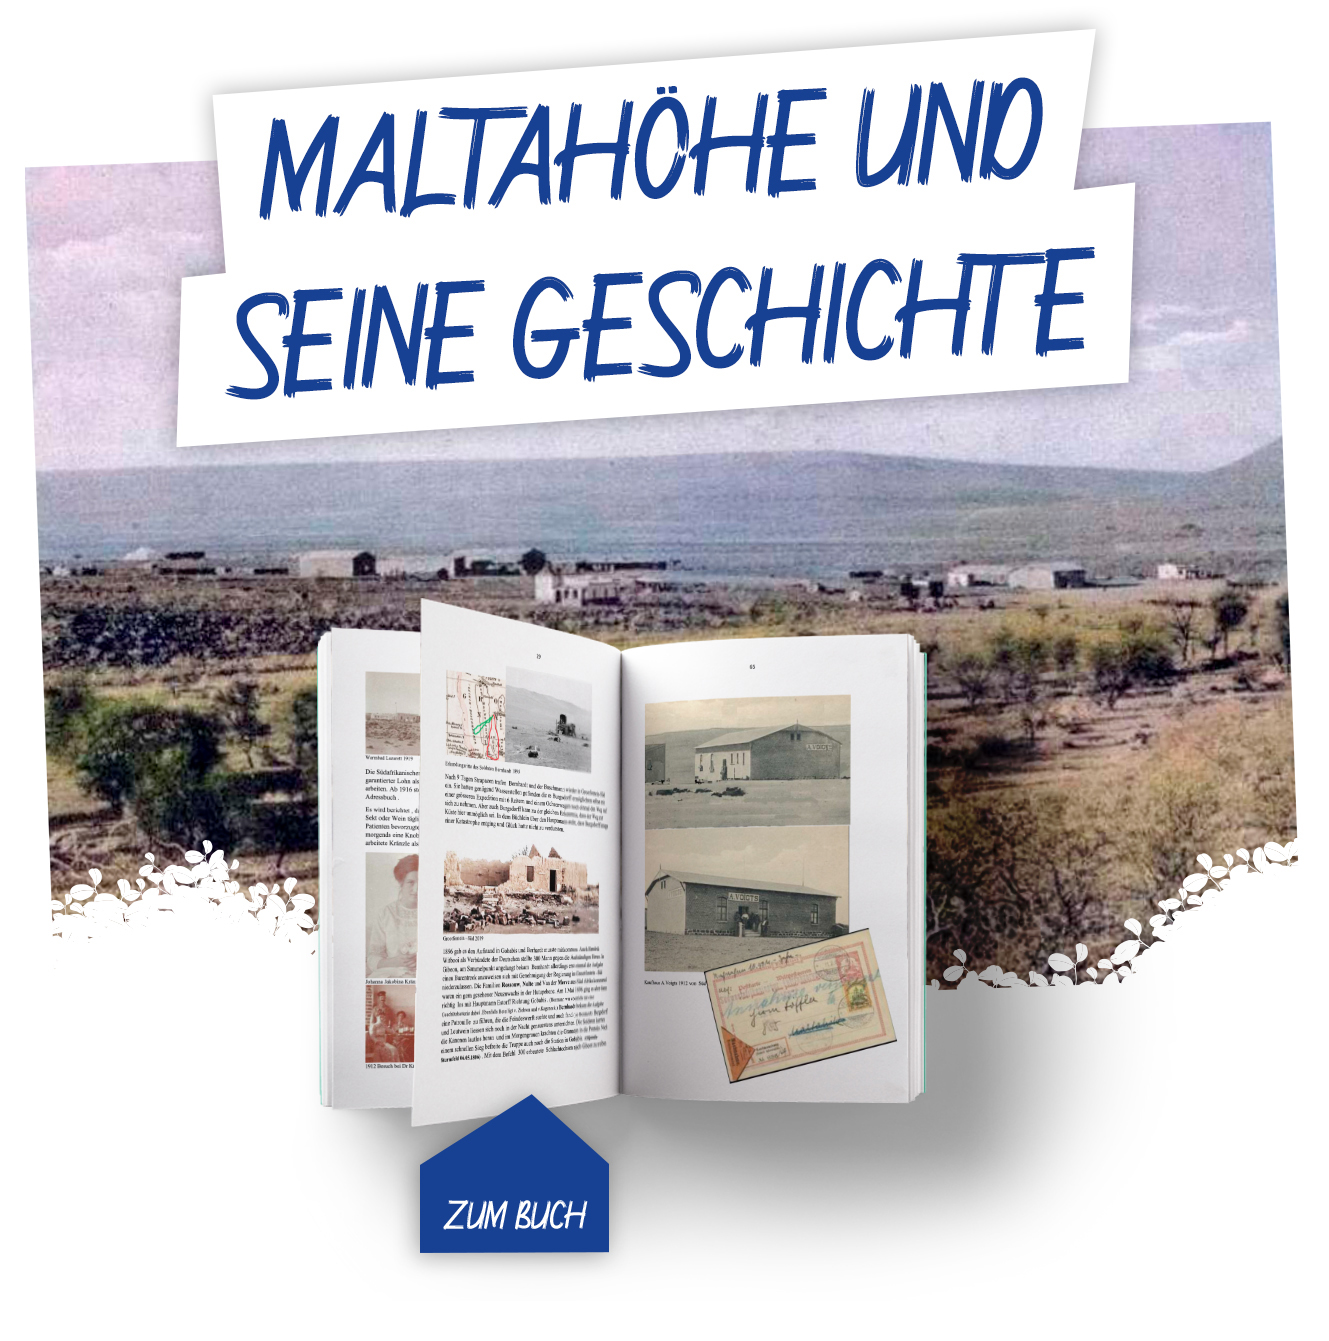 Maltahöhe und seine Geschichte